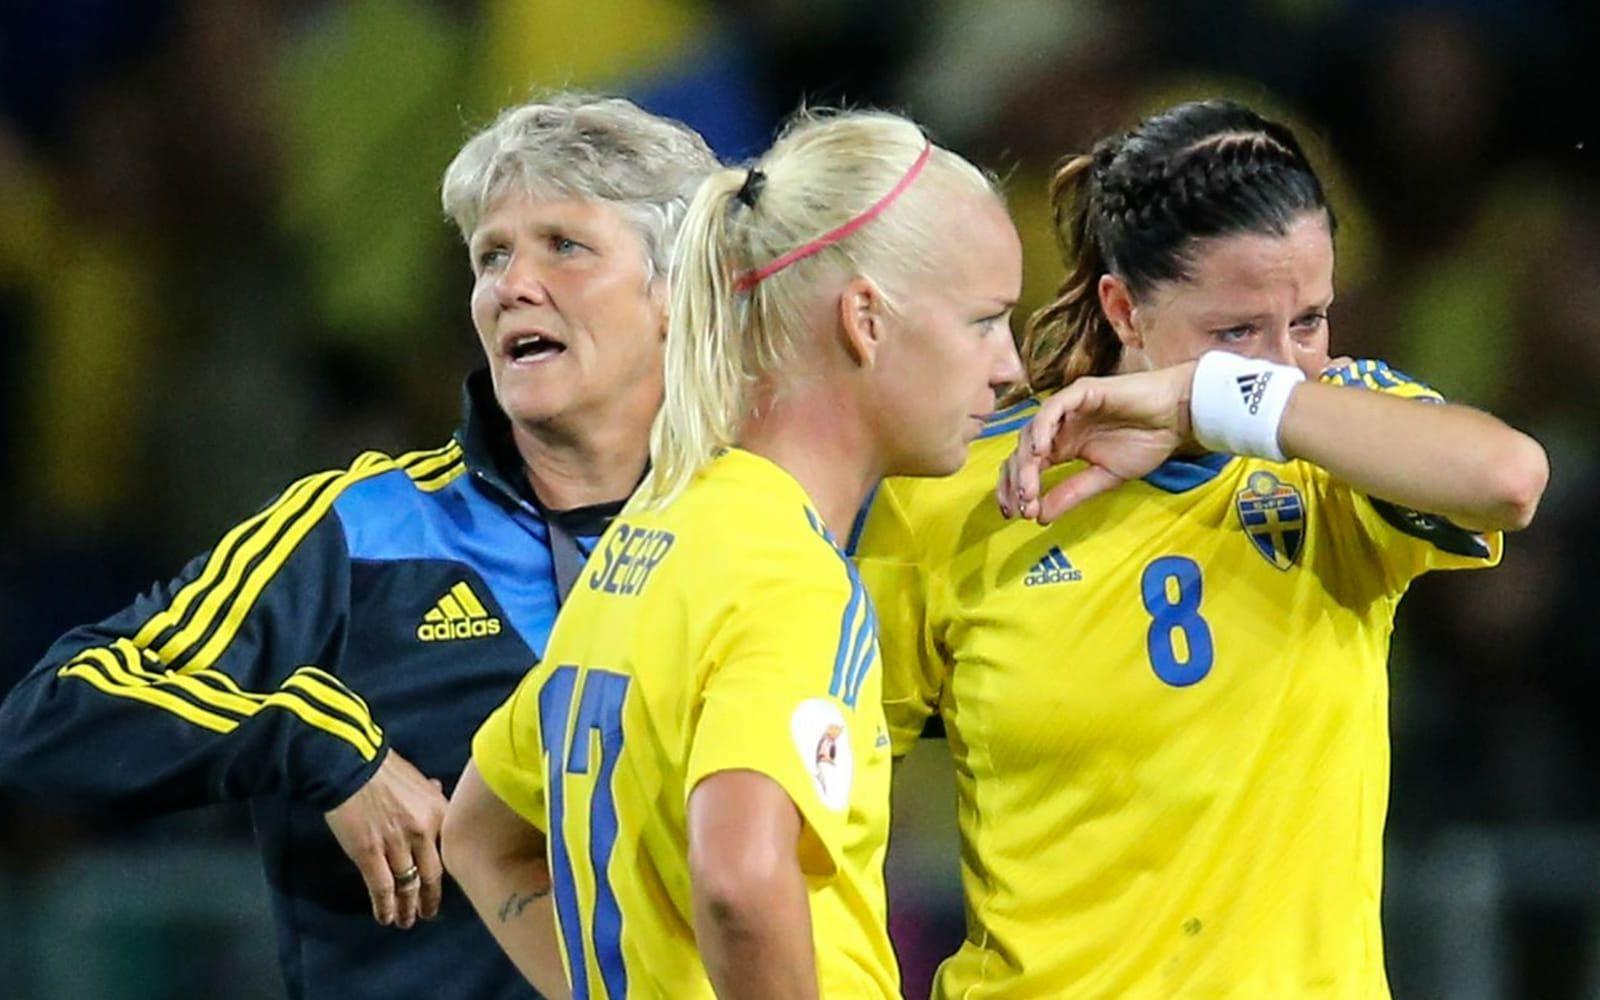 24 juli 2013: Förkrossade svenska spelare sedan Sverige förlorat på Gamla Ullevi mot Tyskland i i EM-semifinalen. Stämningen var på topp sedan man enkelt slagit Island med 4-0 i kvarten, men Tysklands 0-1-mål i 33 minuten fällde avgörandet i semin. Gulddrömmen gick upp i rök. Foto: TT